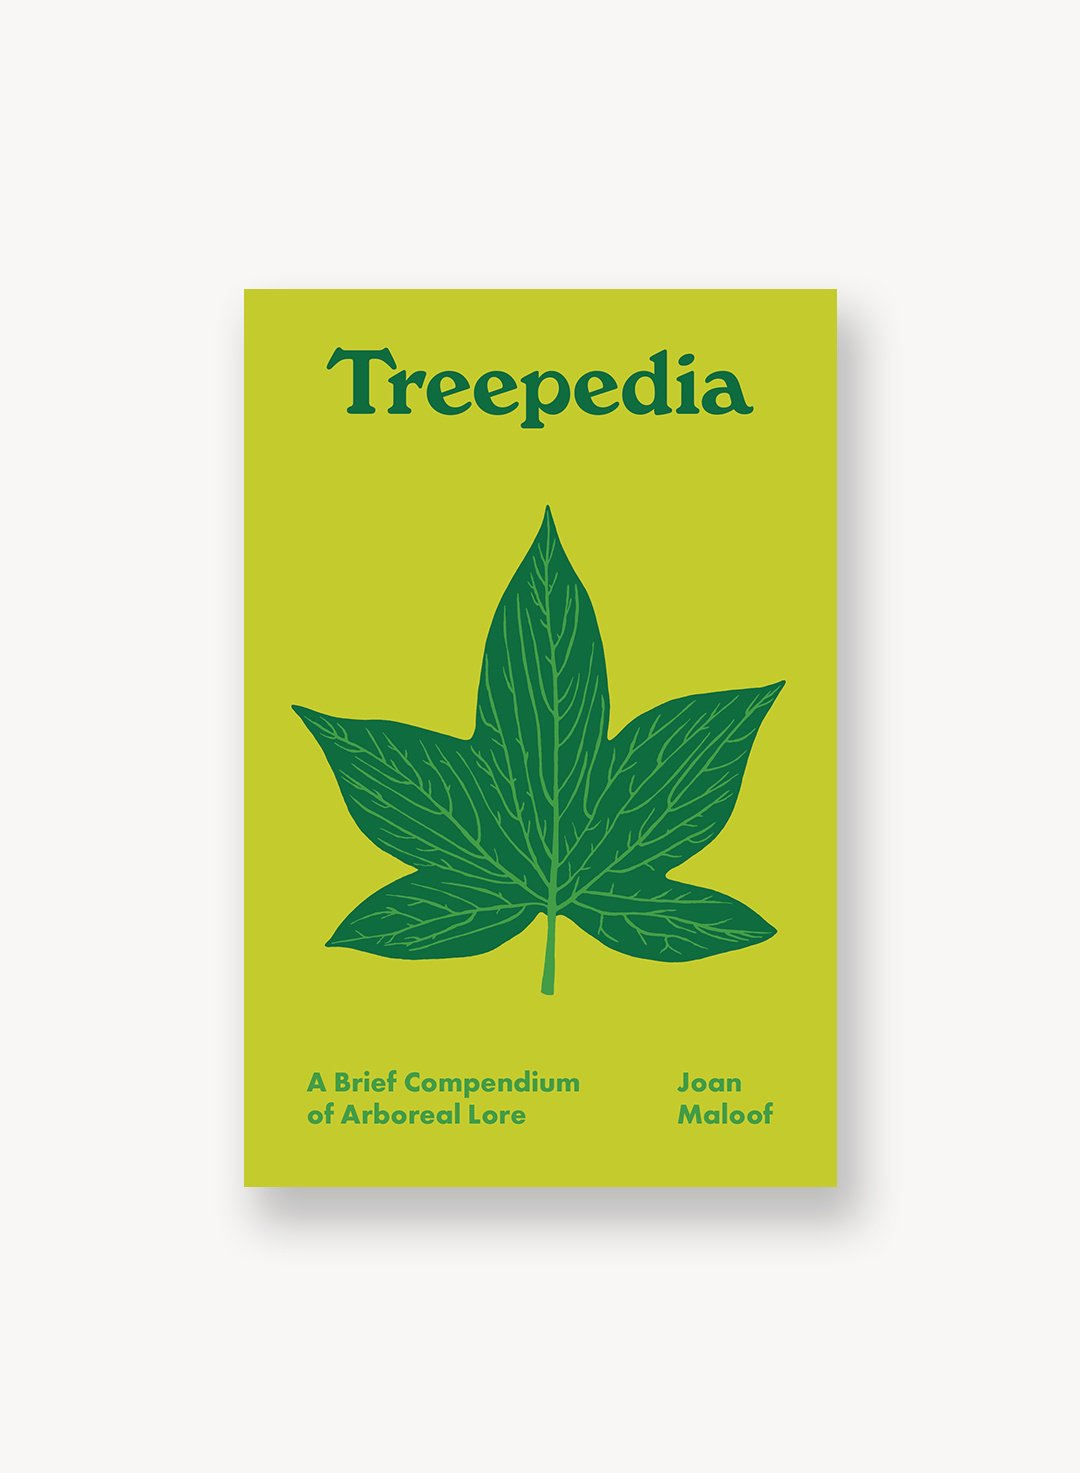 Treepedia: A Brief Compendium of Arboreal Lore